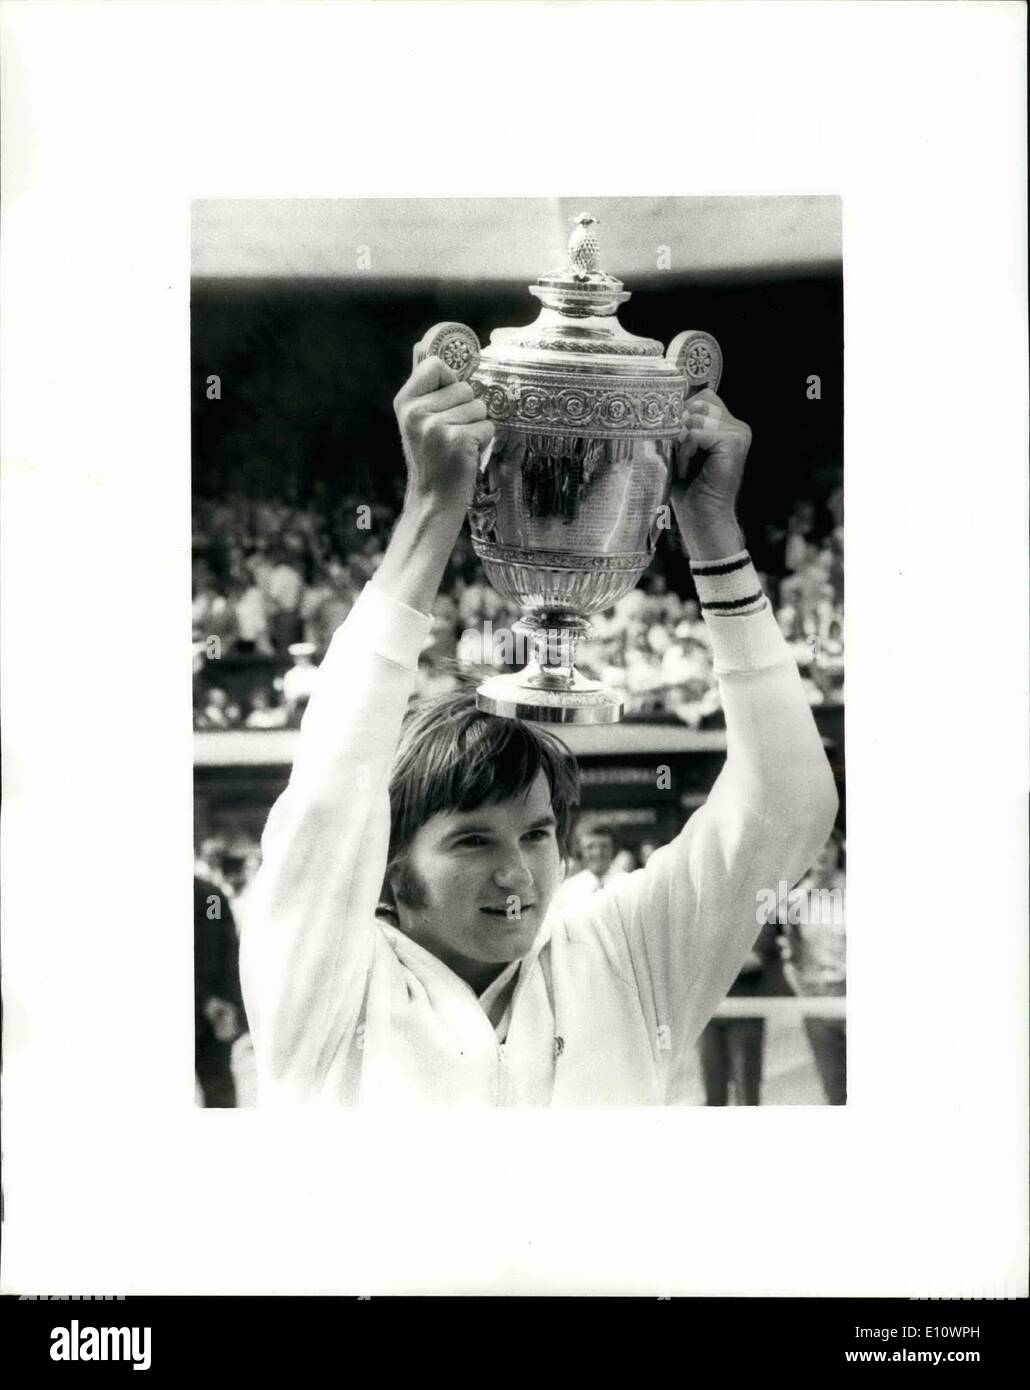 Lug. 07, 1974 - Ken ROSEWALL battuto negli uomini la Finale unica, a Wimbledon Connors vince 6-1, 6-1, 6-4: Gli Uomini Singoli titolo di tennis a Wimbledon ancora fissata Ken Rosewell, di Australia quando è stato battuto oggi nella giornata finale da Jim Connors (U.S.A Connors ha vinto 6-1, 6-1, 64. Jim Connors (U.S.A.) con il suo trofeo dopo aver vinto uomini singoli finale a Wimbledon oggi. Foto Stock